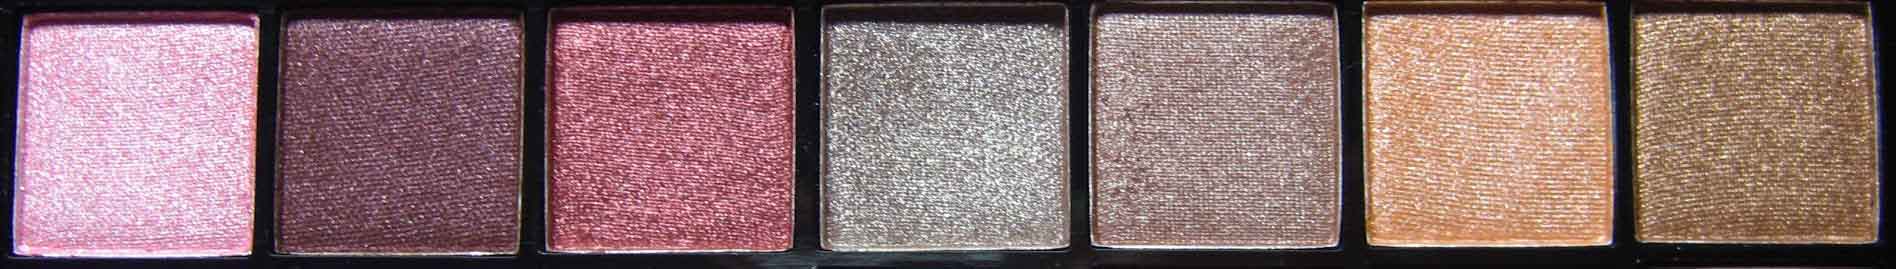 Make-up-Treasurebox-43---Nagelfabriek-Blog